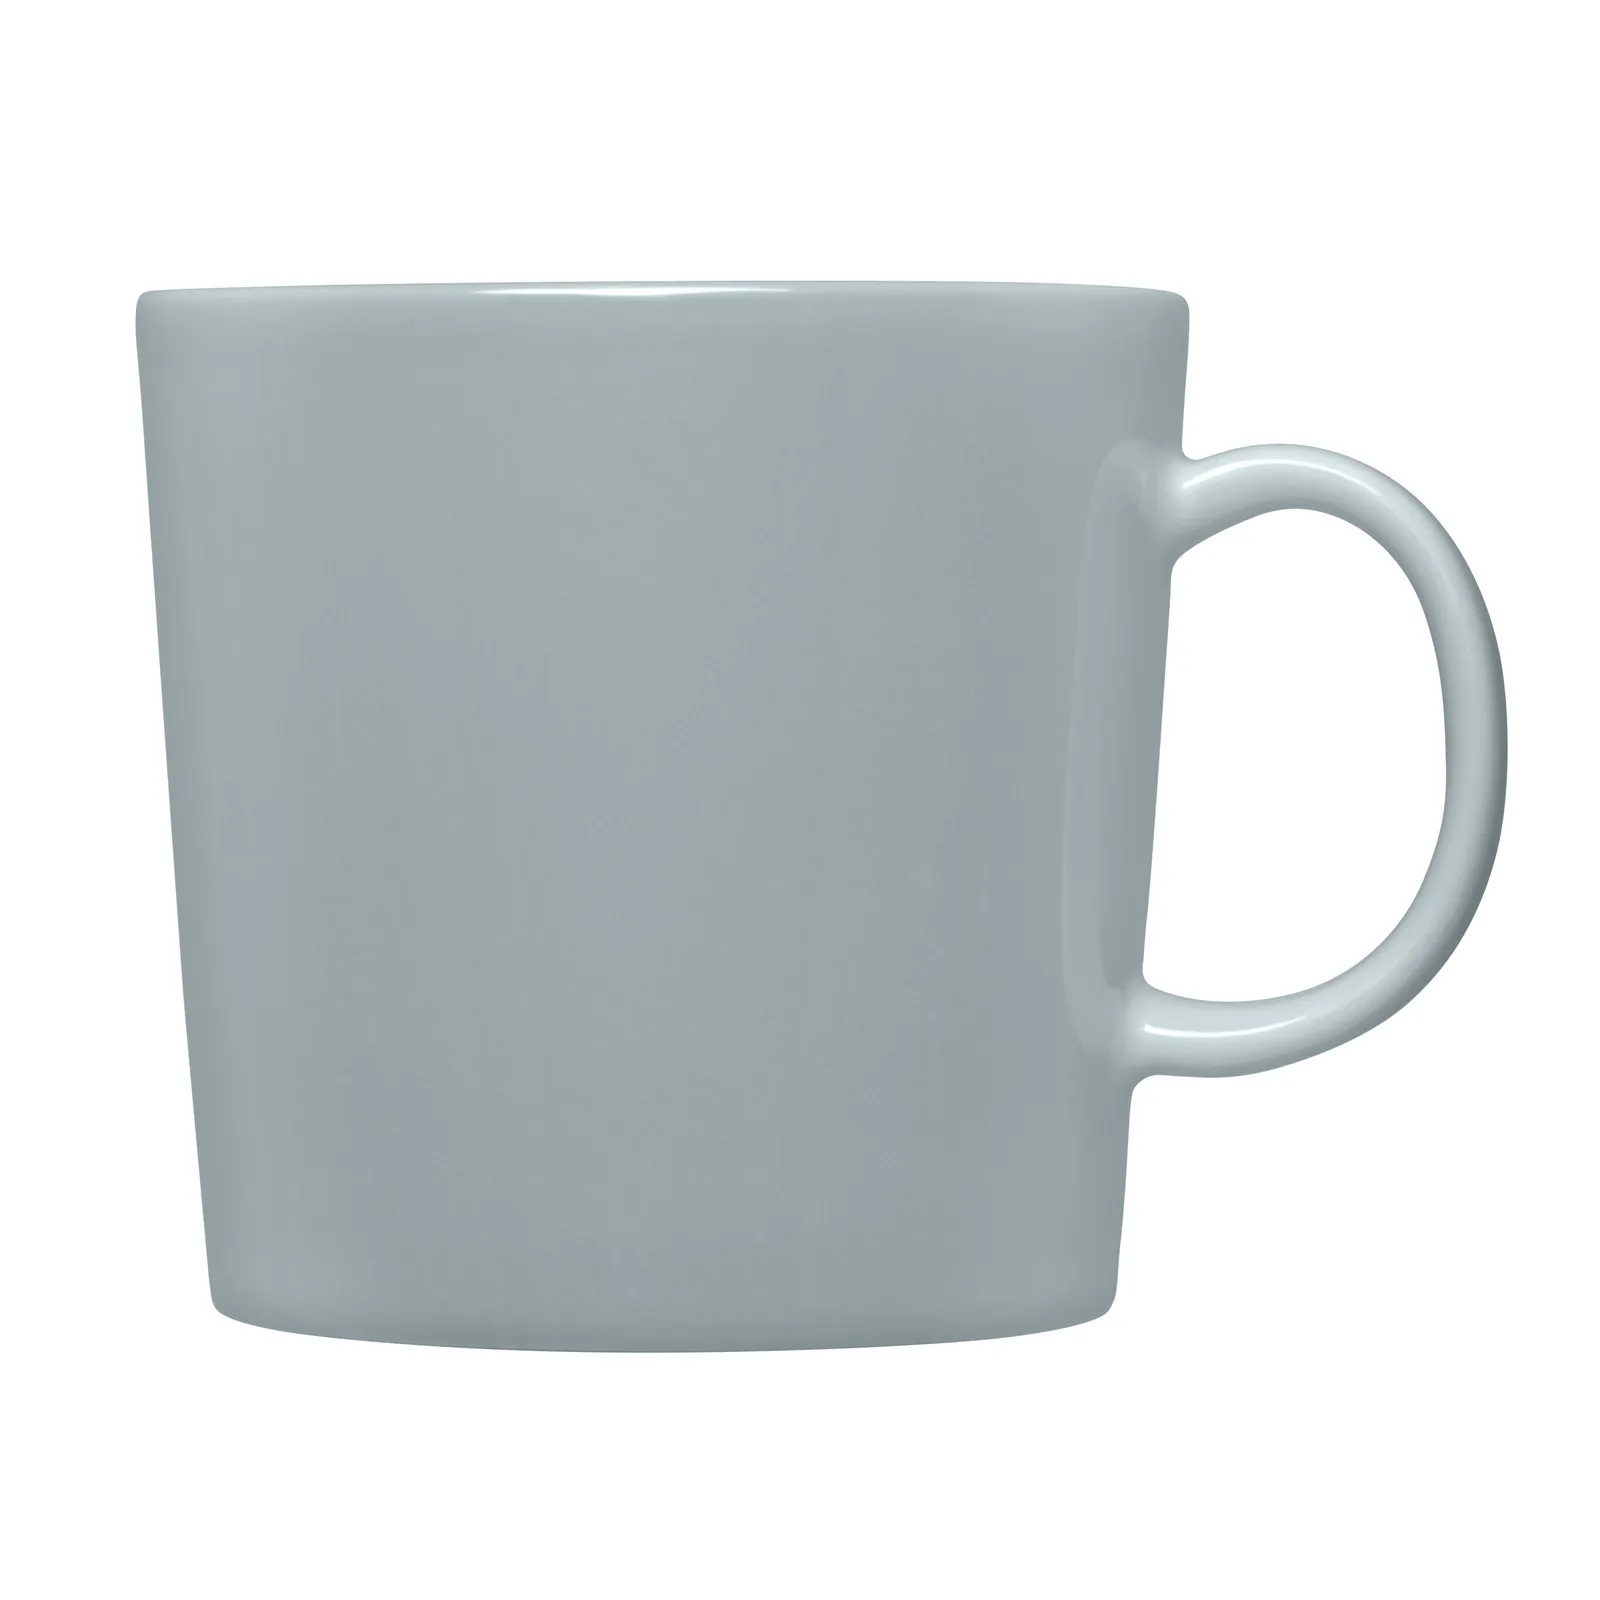 Iittala Teema mug 0,4L pearl grey